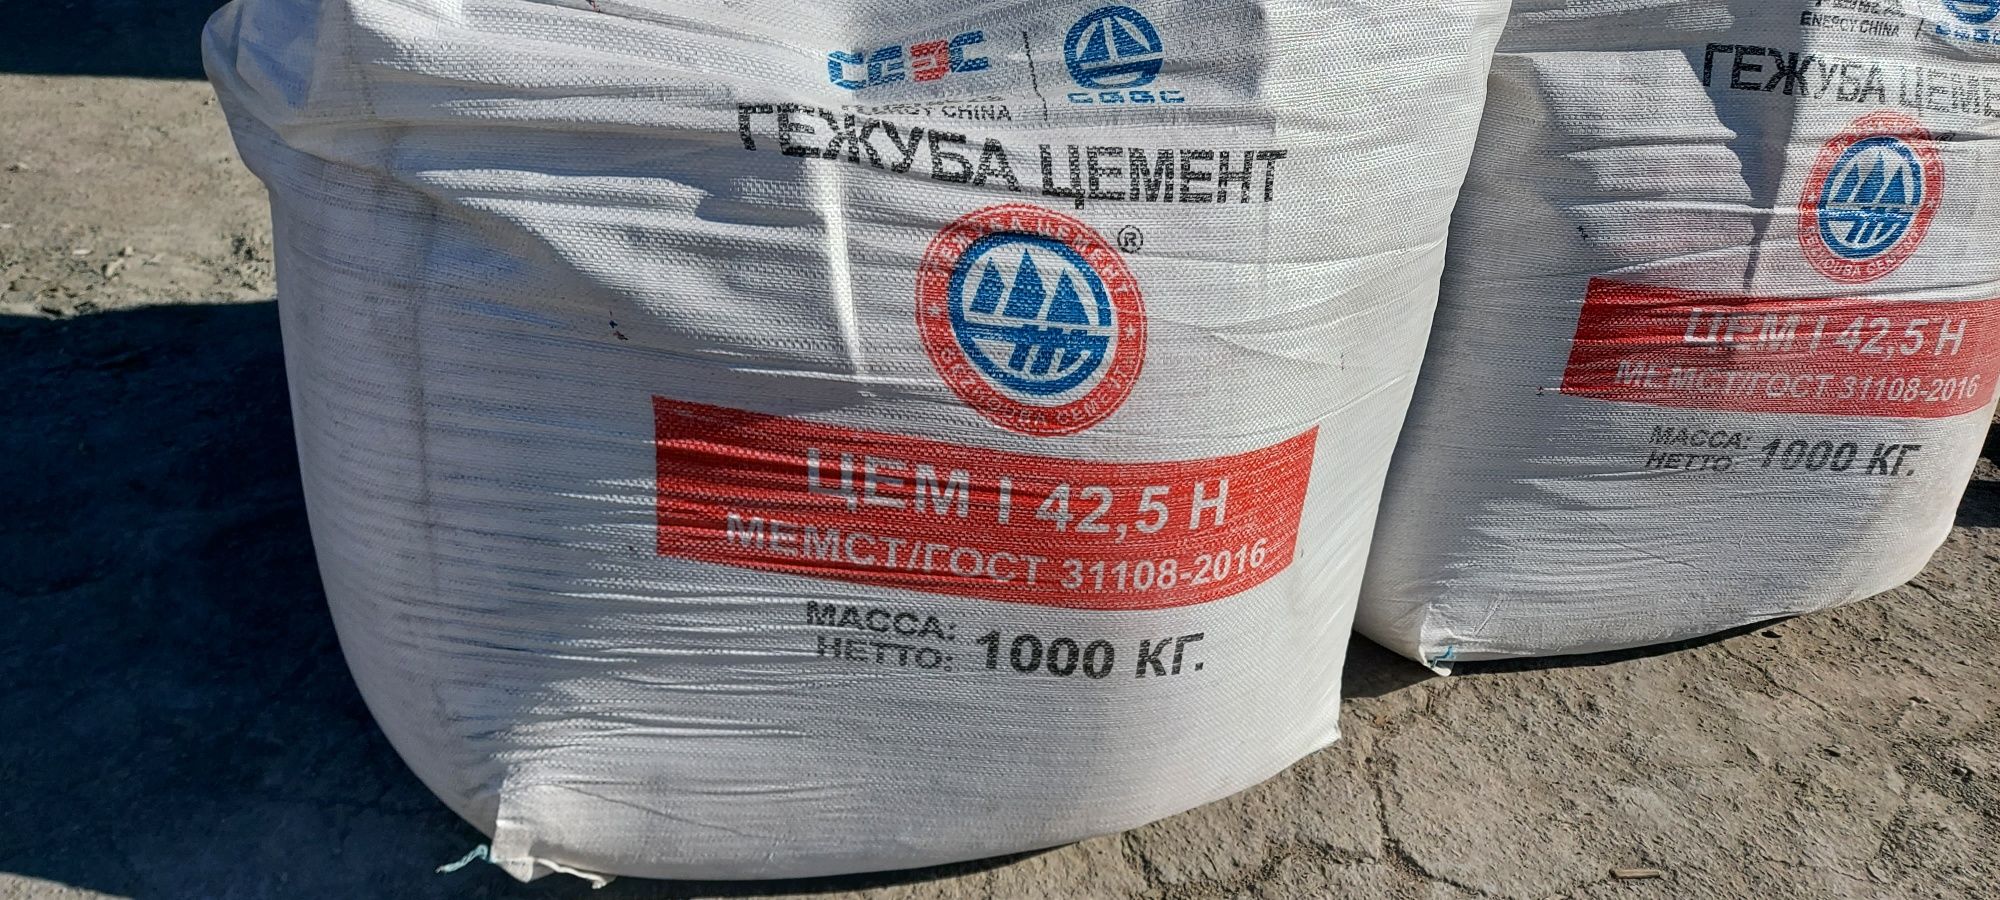 Цемент в Бигбэгах 450+, 500 марка-500сульфата Марок по 1 тонне